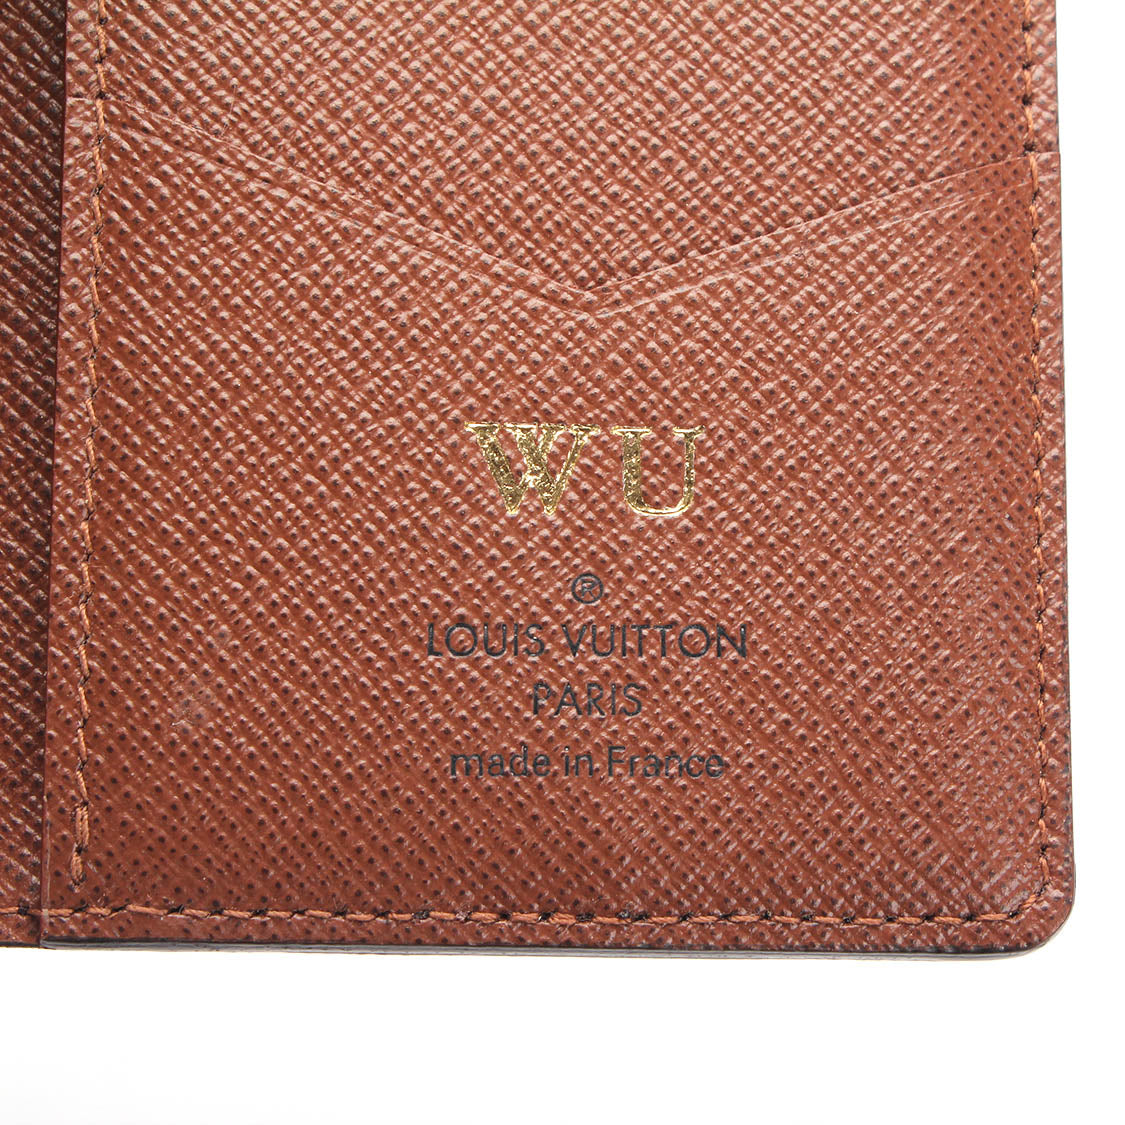 Monogram Pocket Organizer M60502 – LuxUness